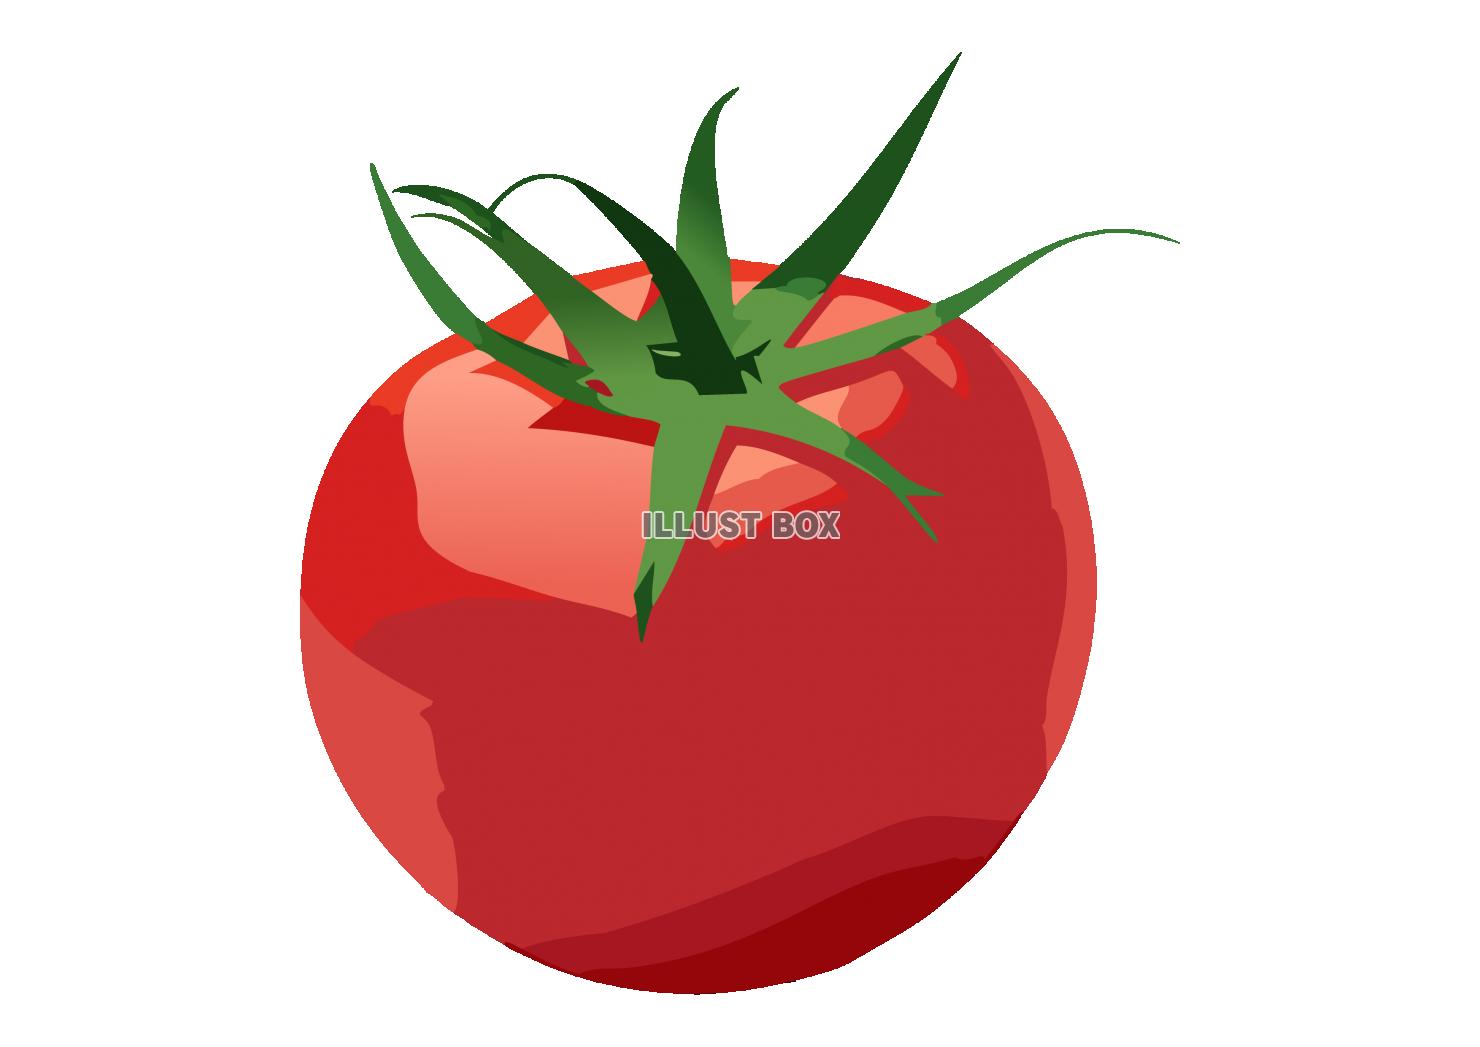 真っ赤に熟れた新鮮なトマトのイラスト素材